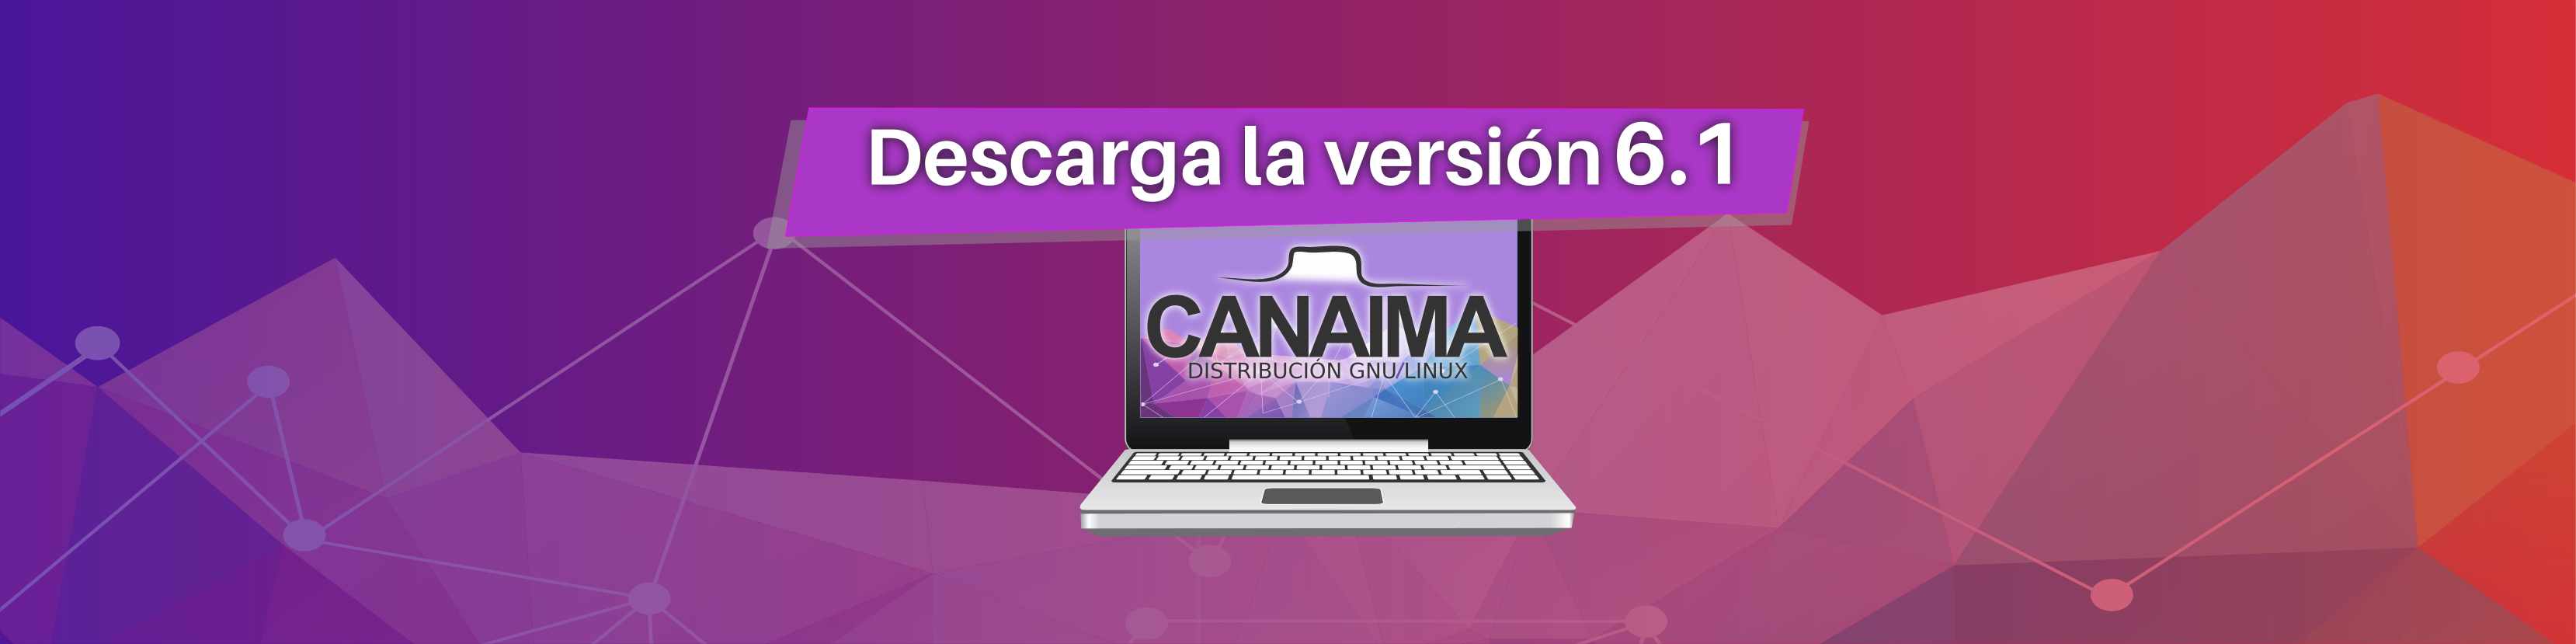 Nueva versión Canaima 6.1 Kavac